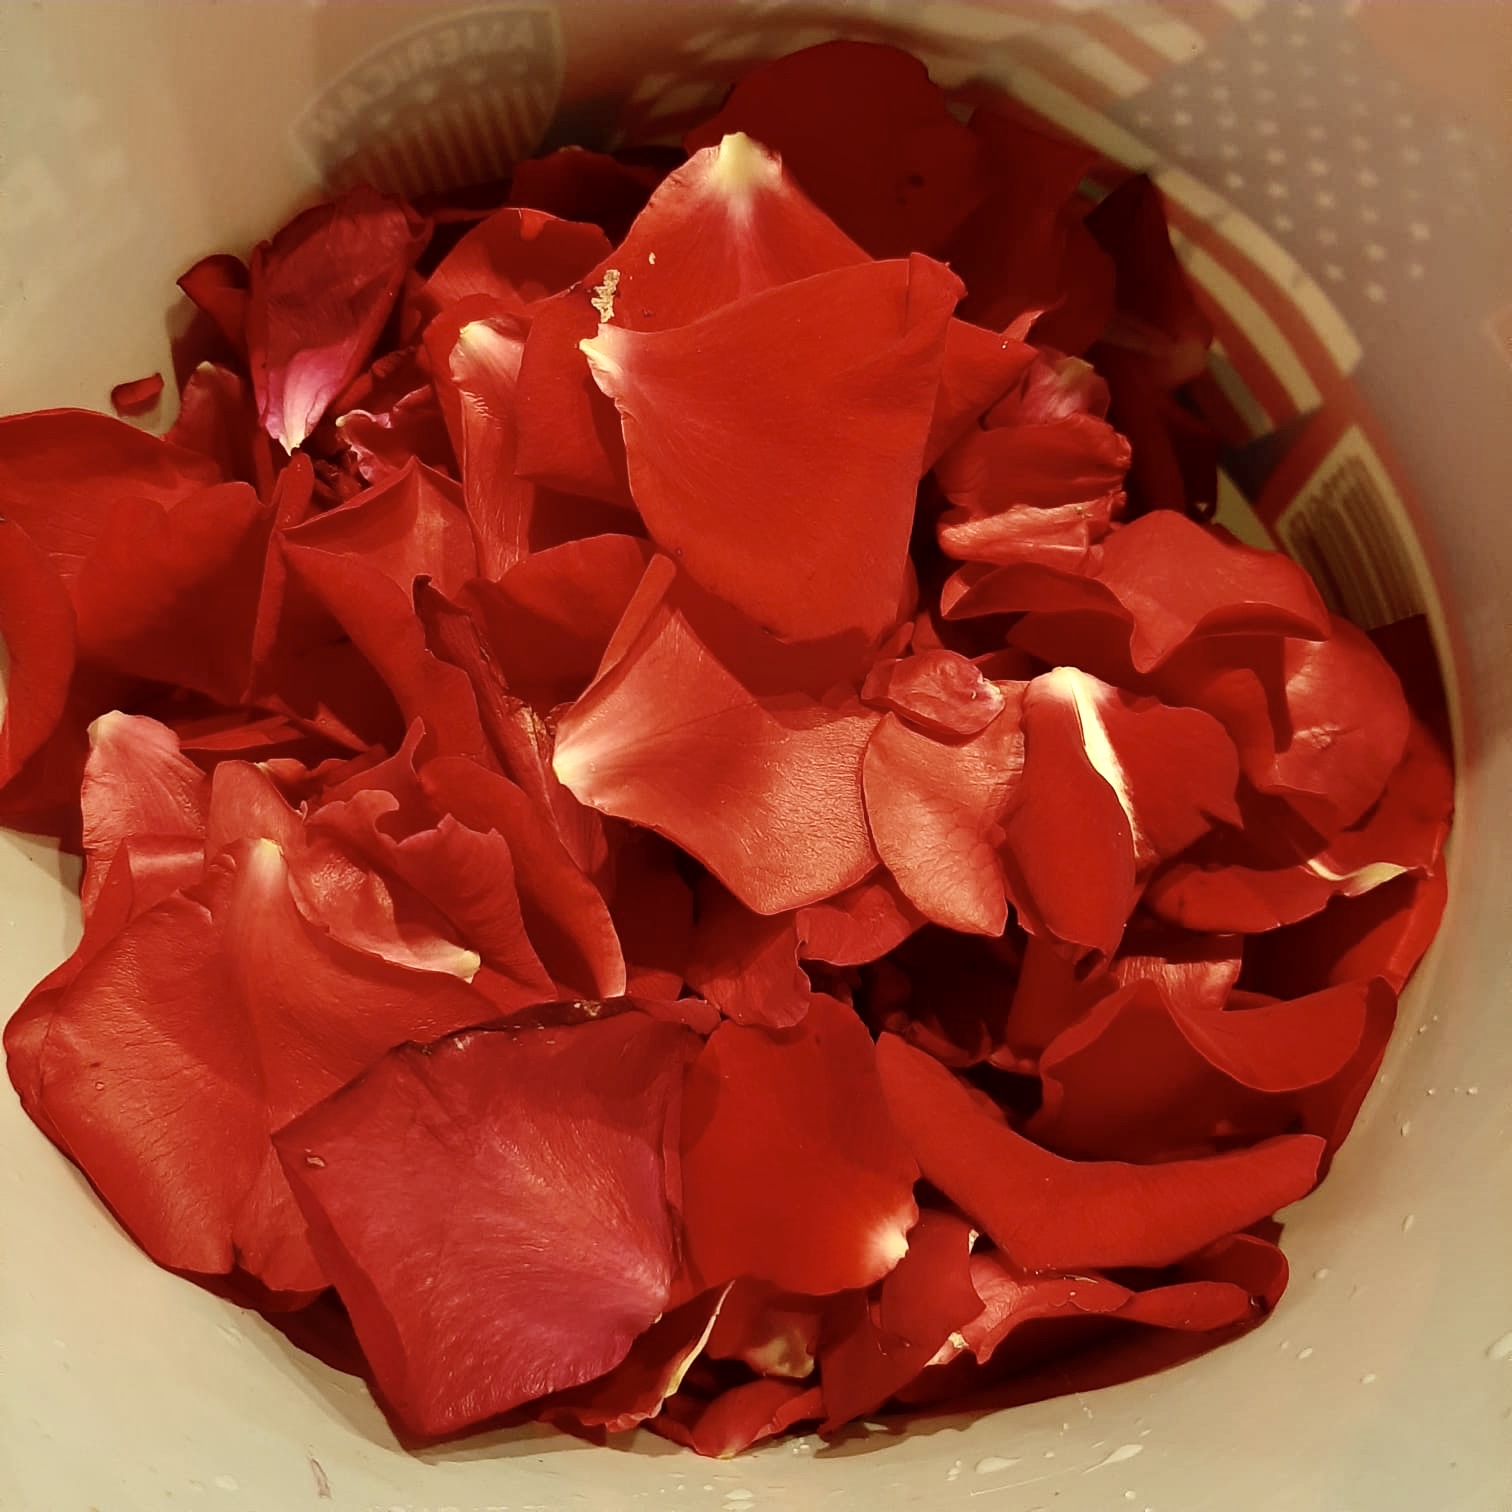 Bild zum Schritt 11 für das Bastel- und DIY-Abenteuer für Kinder: 'Saubere Rosenblätter in einen hitzebeständigen Krug geben.'